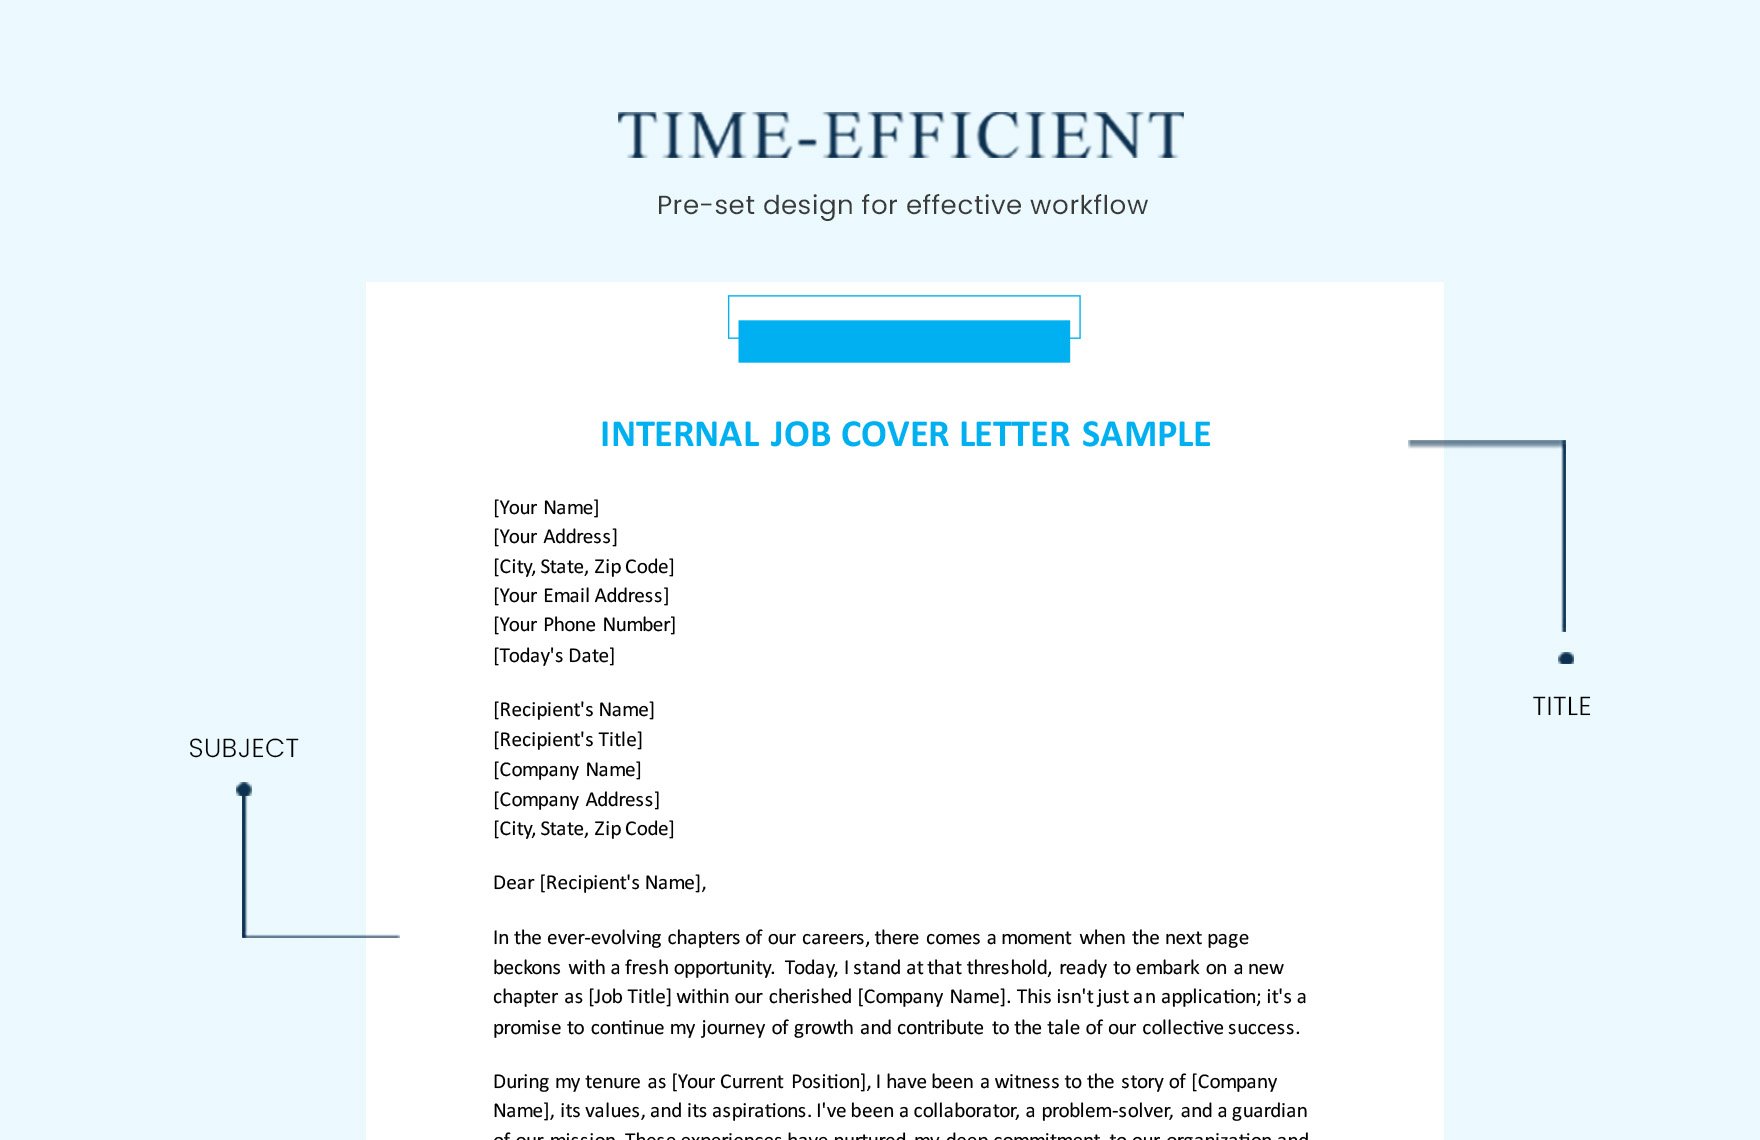 Internal Job Cover Letter Sample